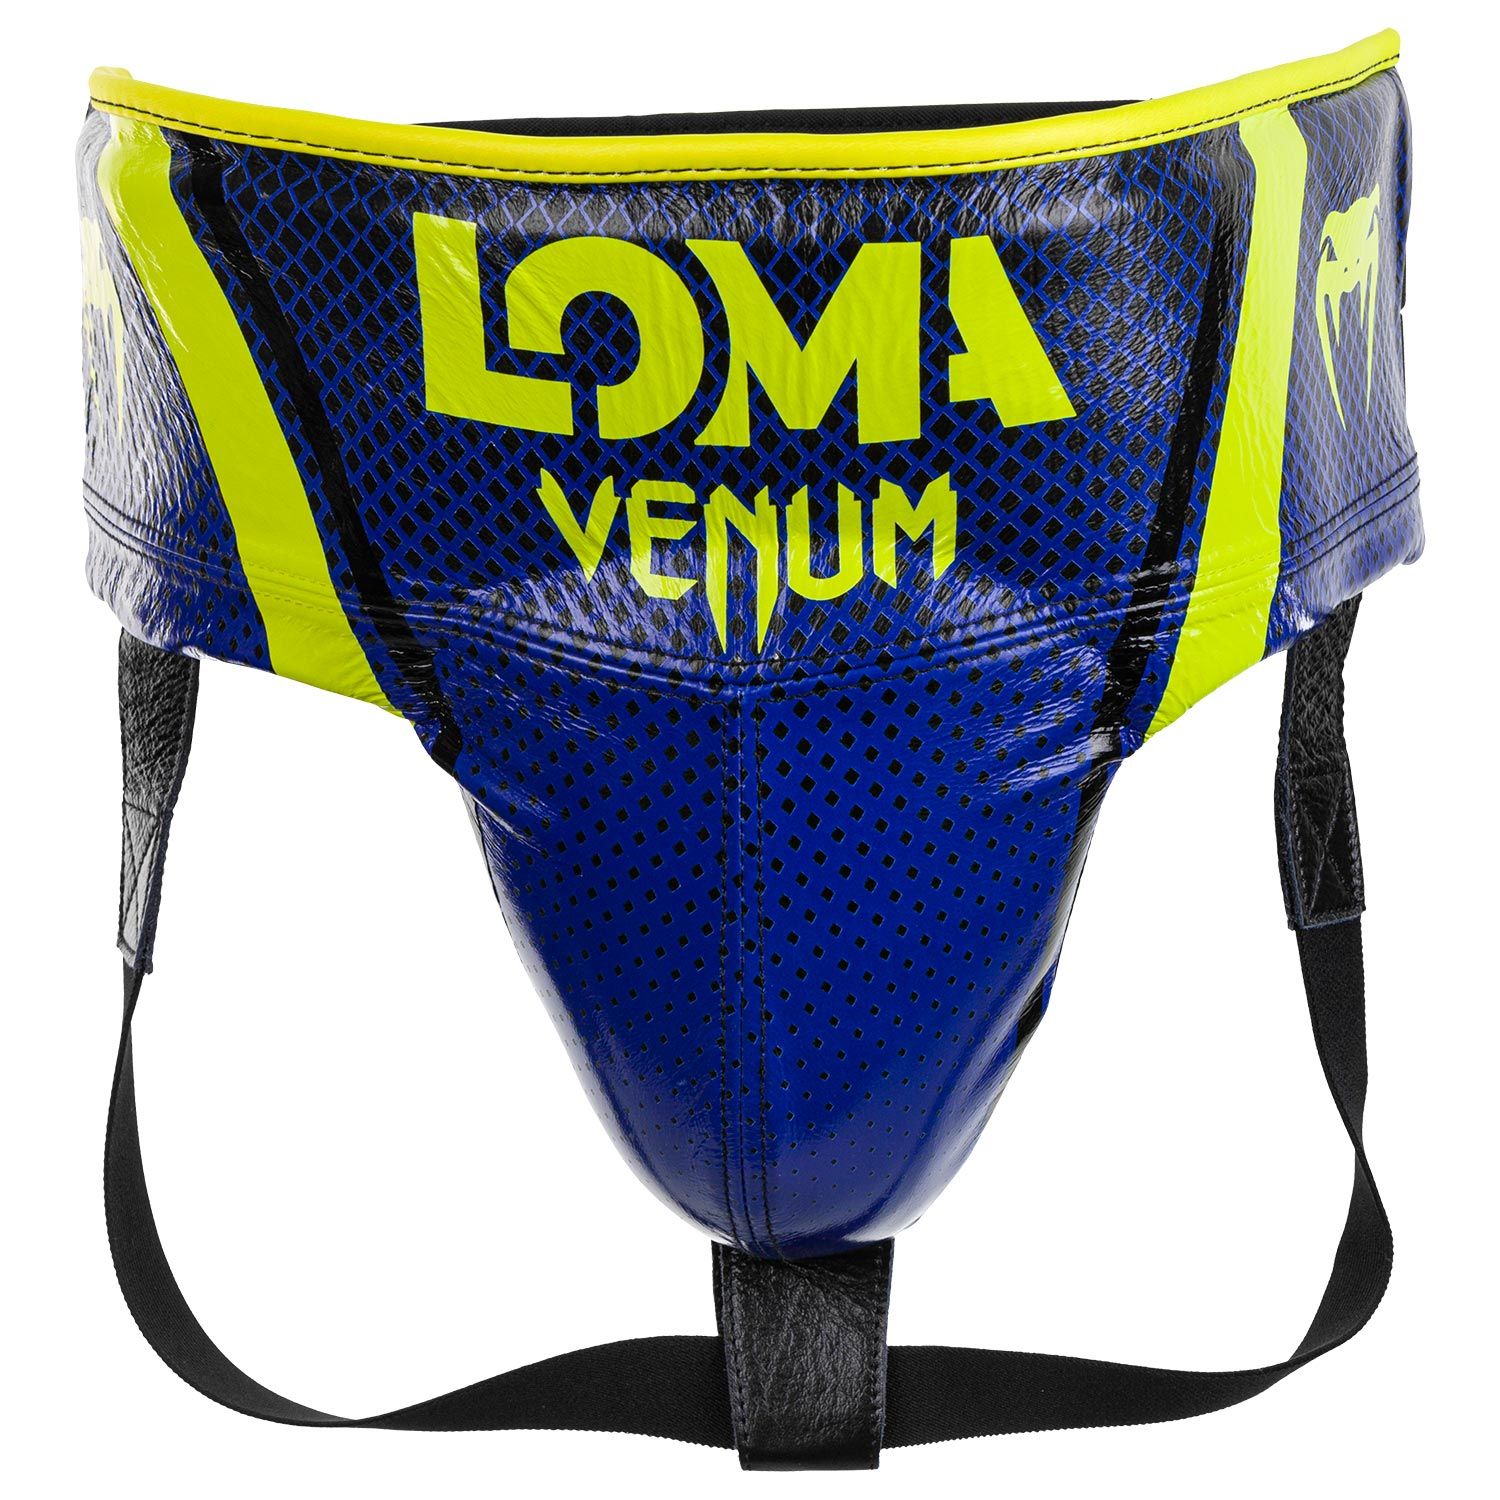 Venum Pro Beschermende cup Loma-editie - met klittenband - blauw/geel